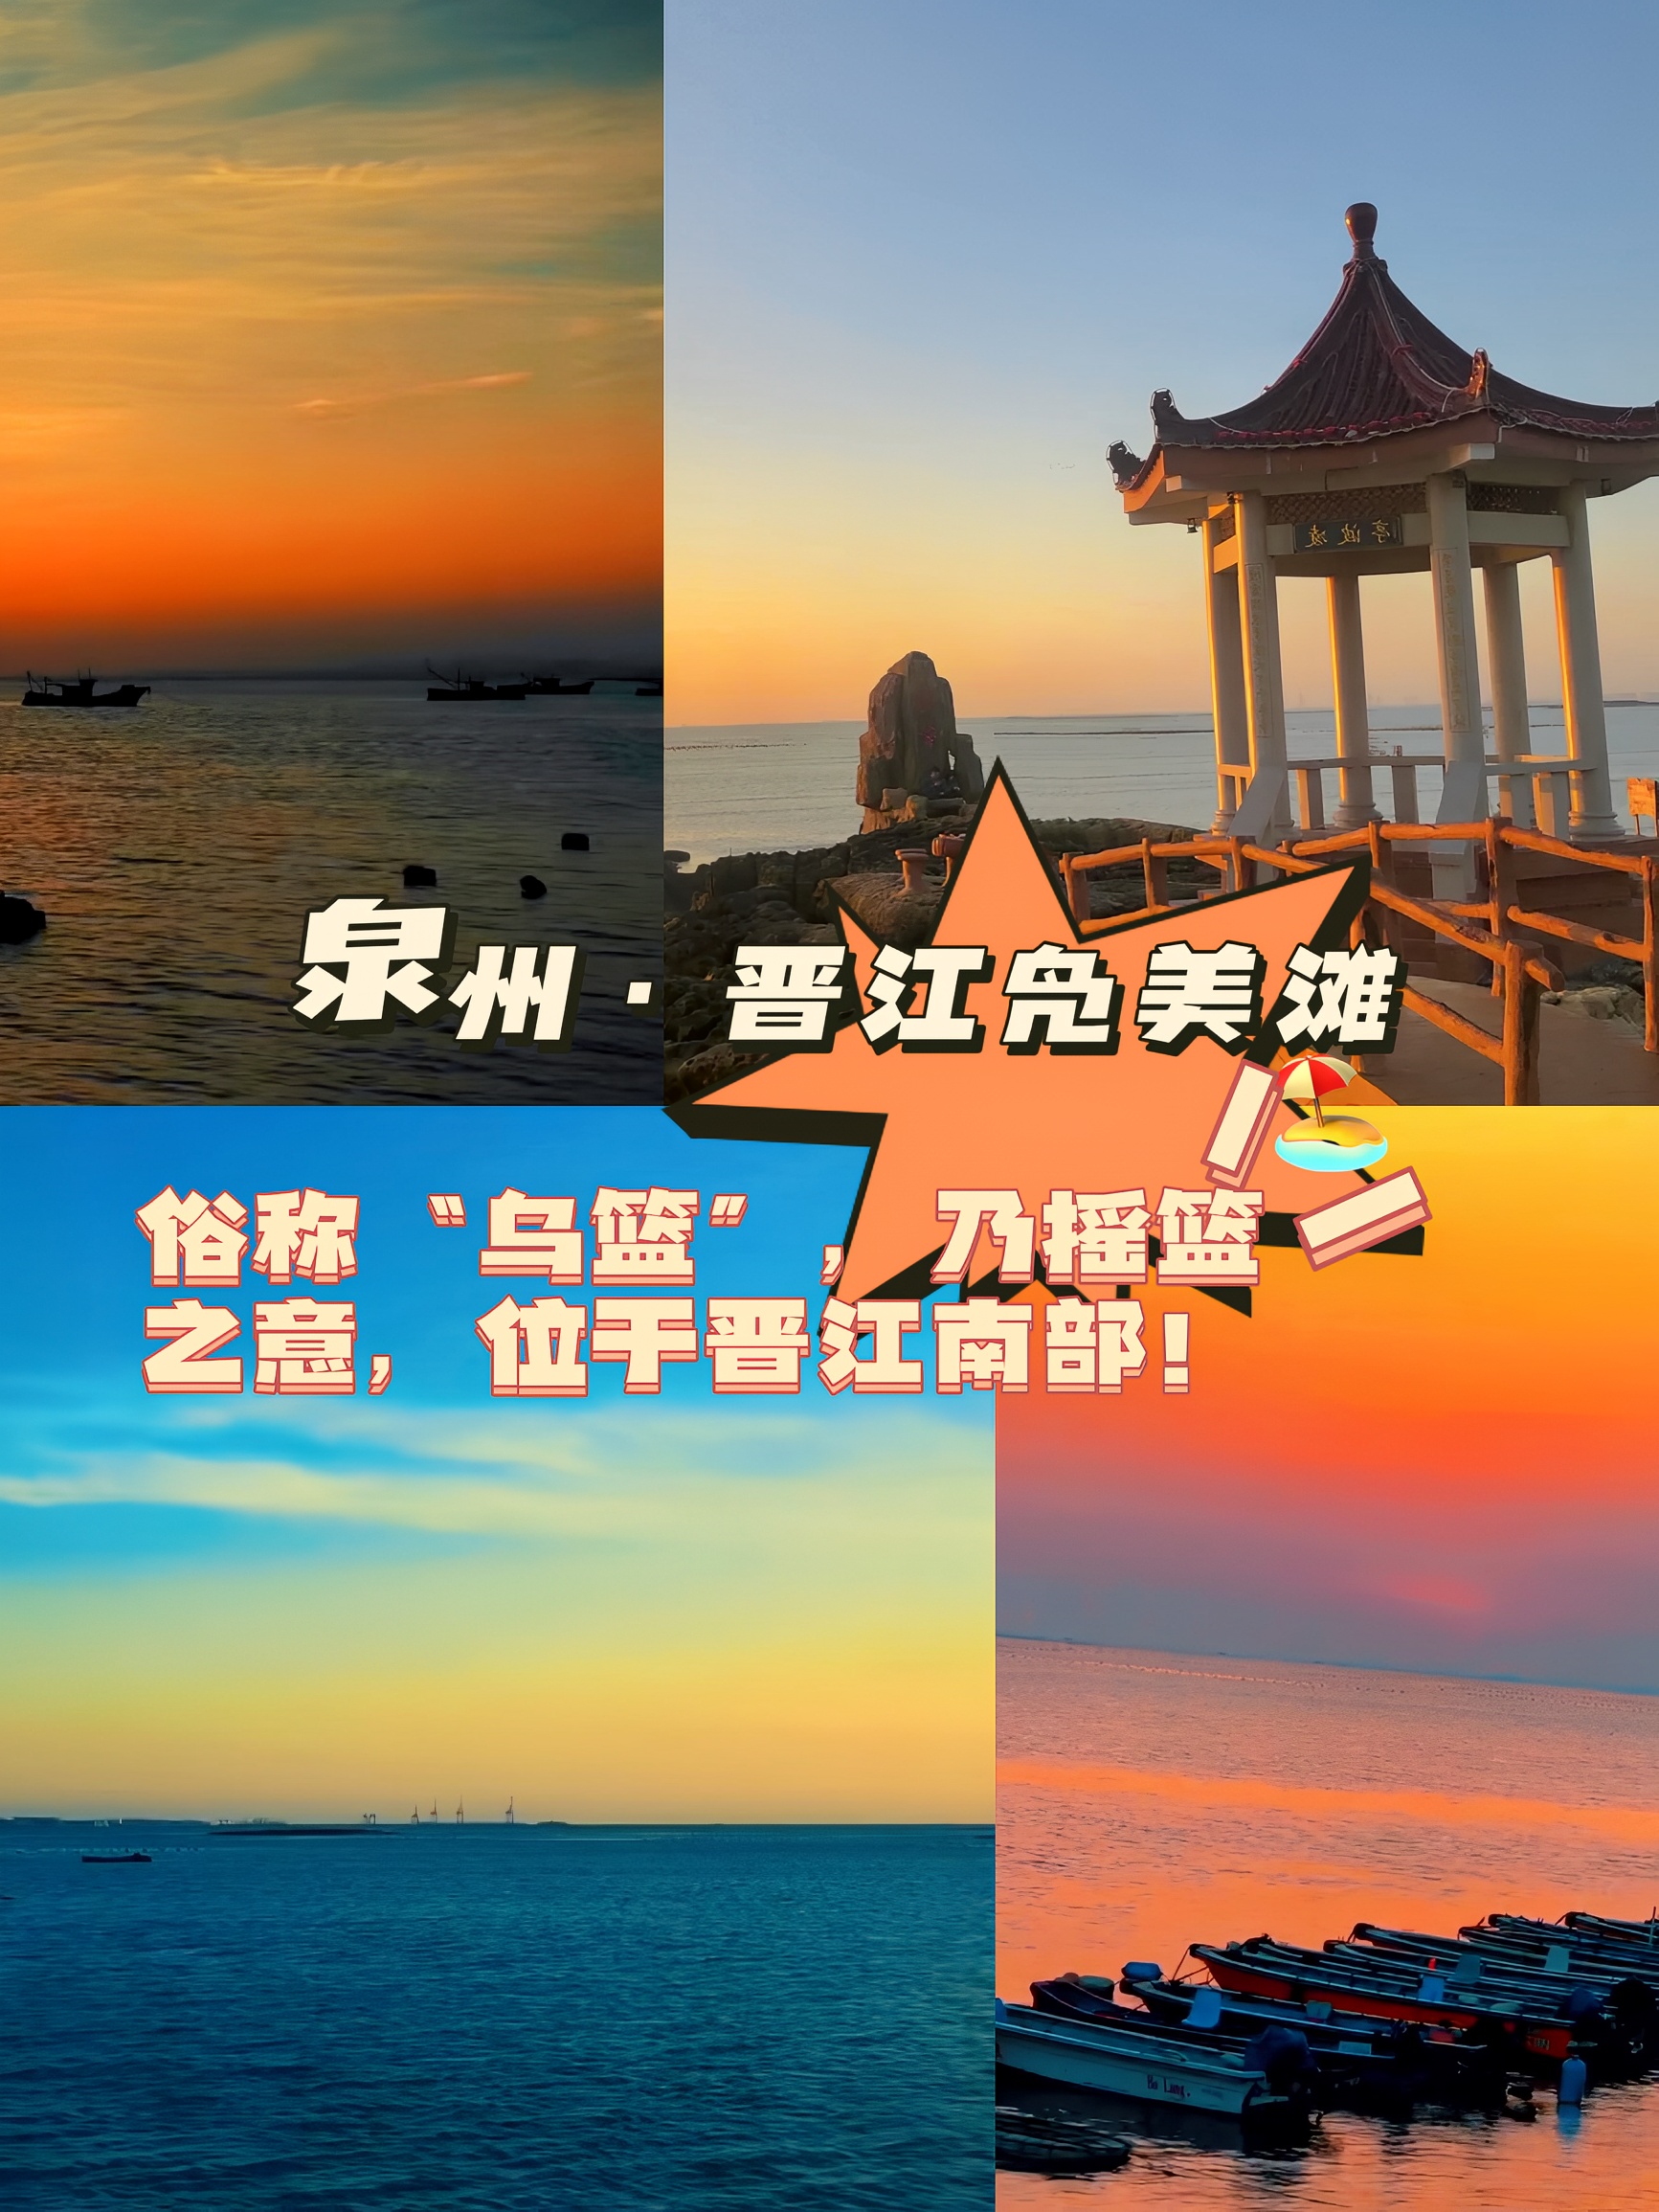 凫美滩🏖️赶海英林俗称“乌篮”乃摇篮之意 位于晋江南部